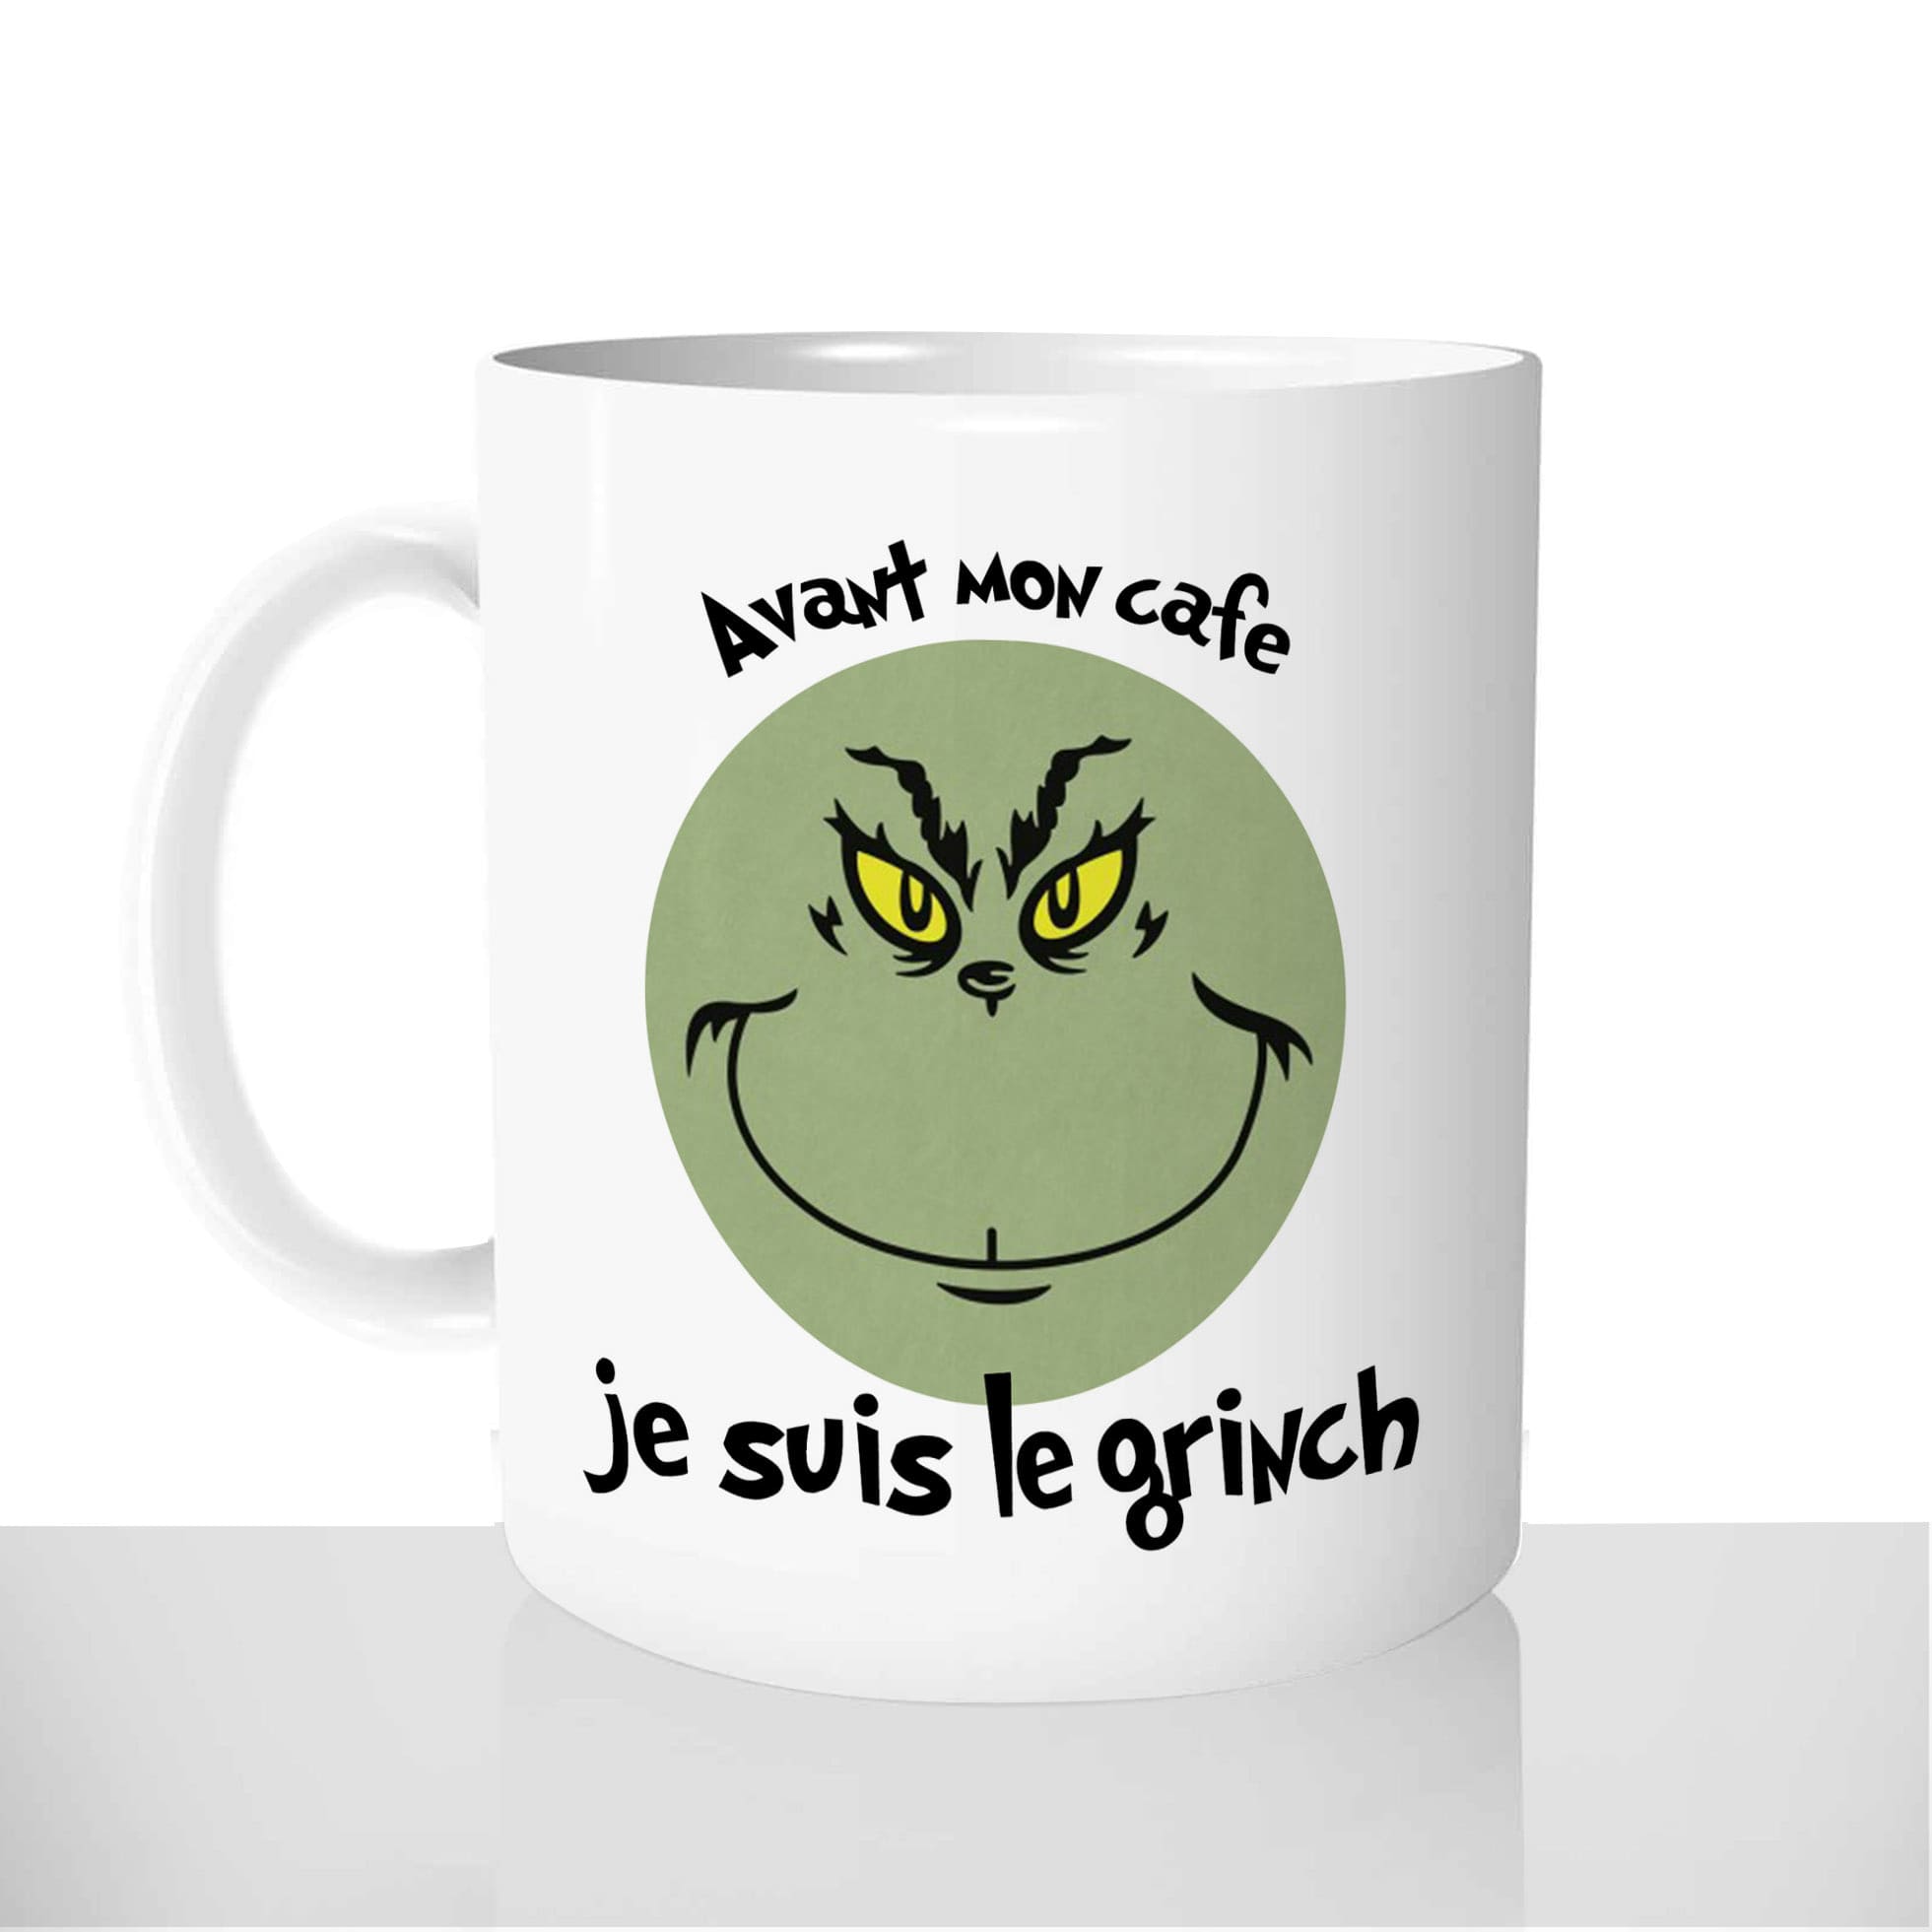 mug-blanc-céramique-11oz-france-mugs-surprise-pas-cher-avant-mon-café-je-suis-le-grinch-humour-reveil-fun